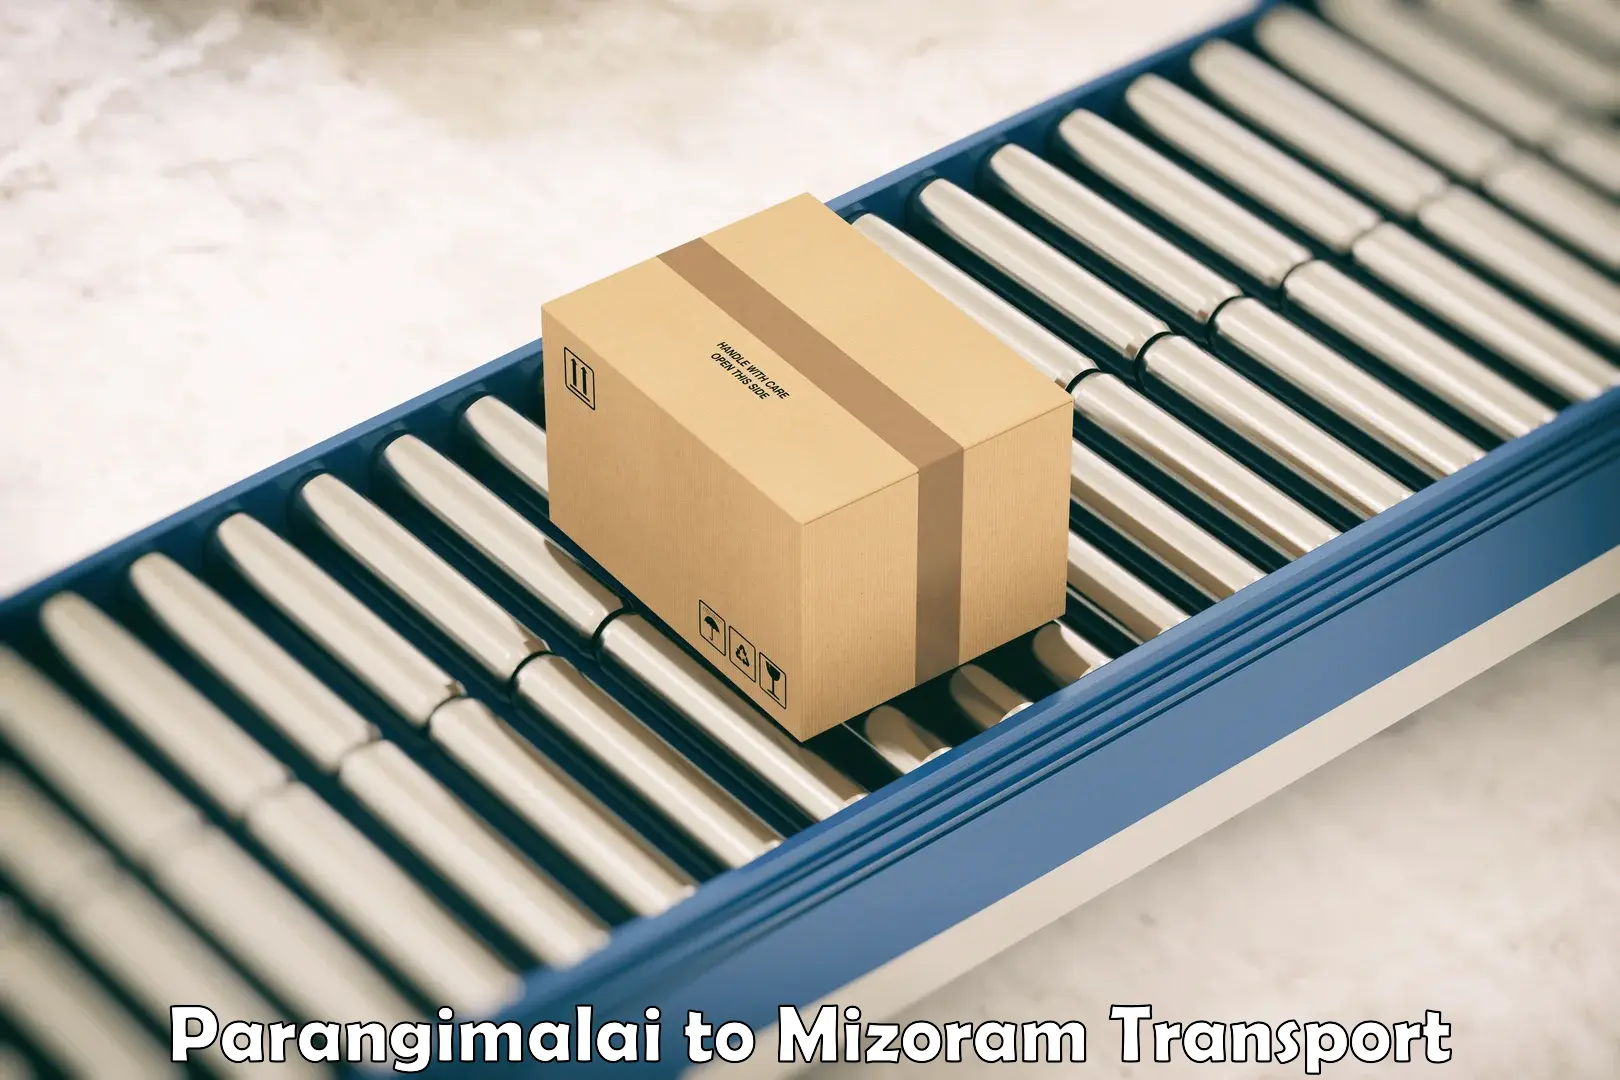 Container transportation services Parangimalai to Mizoram